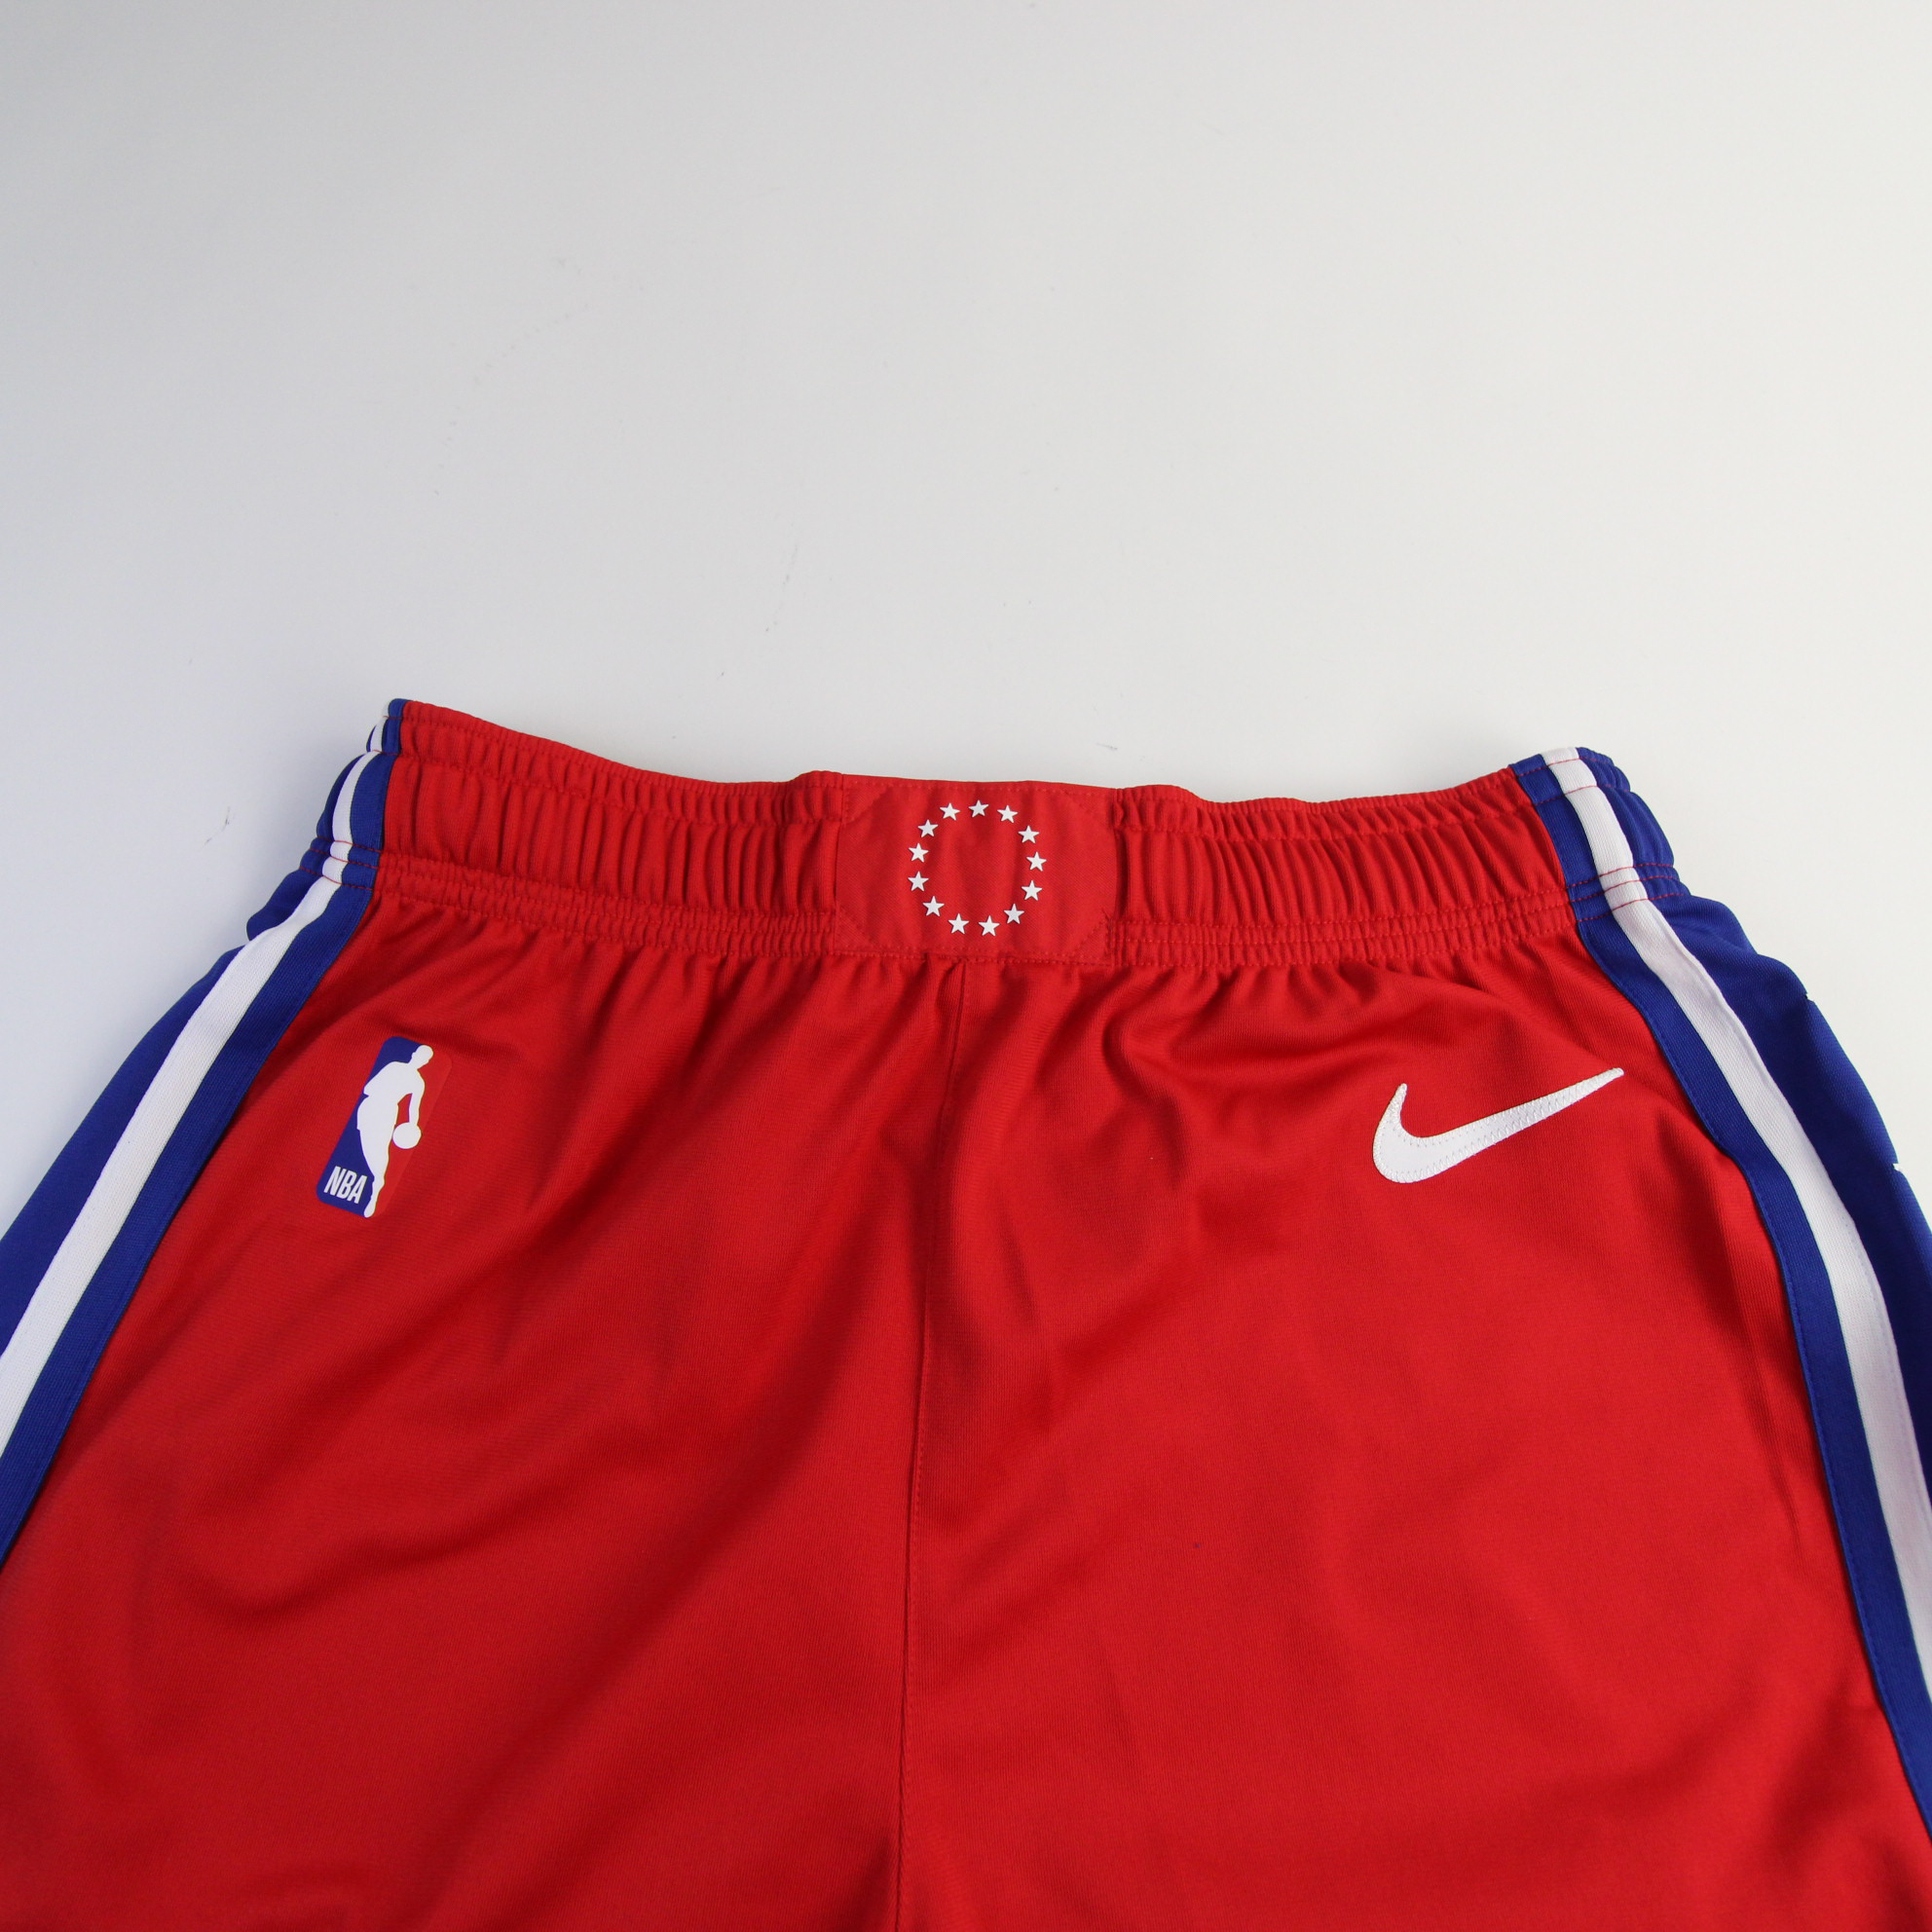 Philadelphia 76ers Nike NBA Authentics VaporKnit Game Shorts Men's New